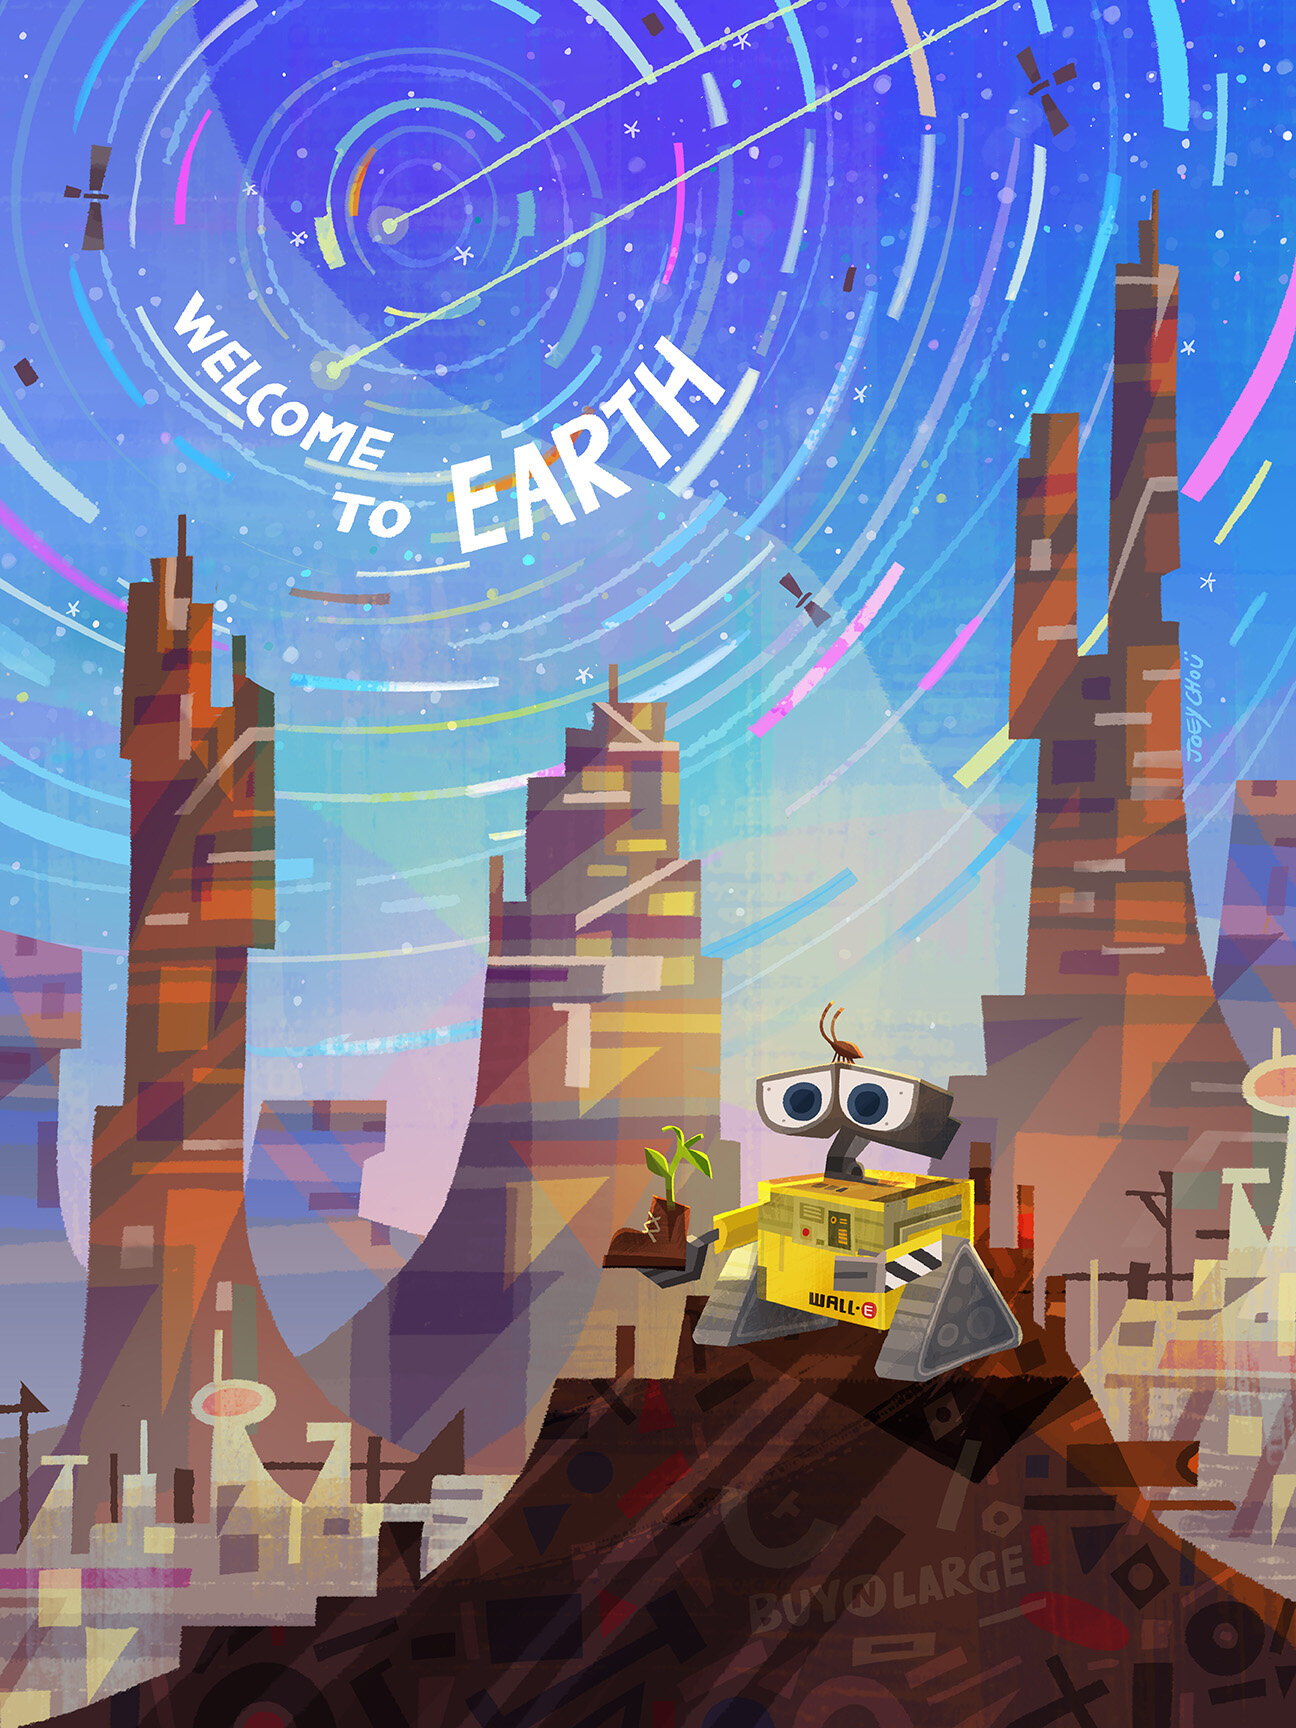 Pixar Dream Destinations- Wall E earth